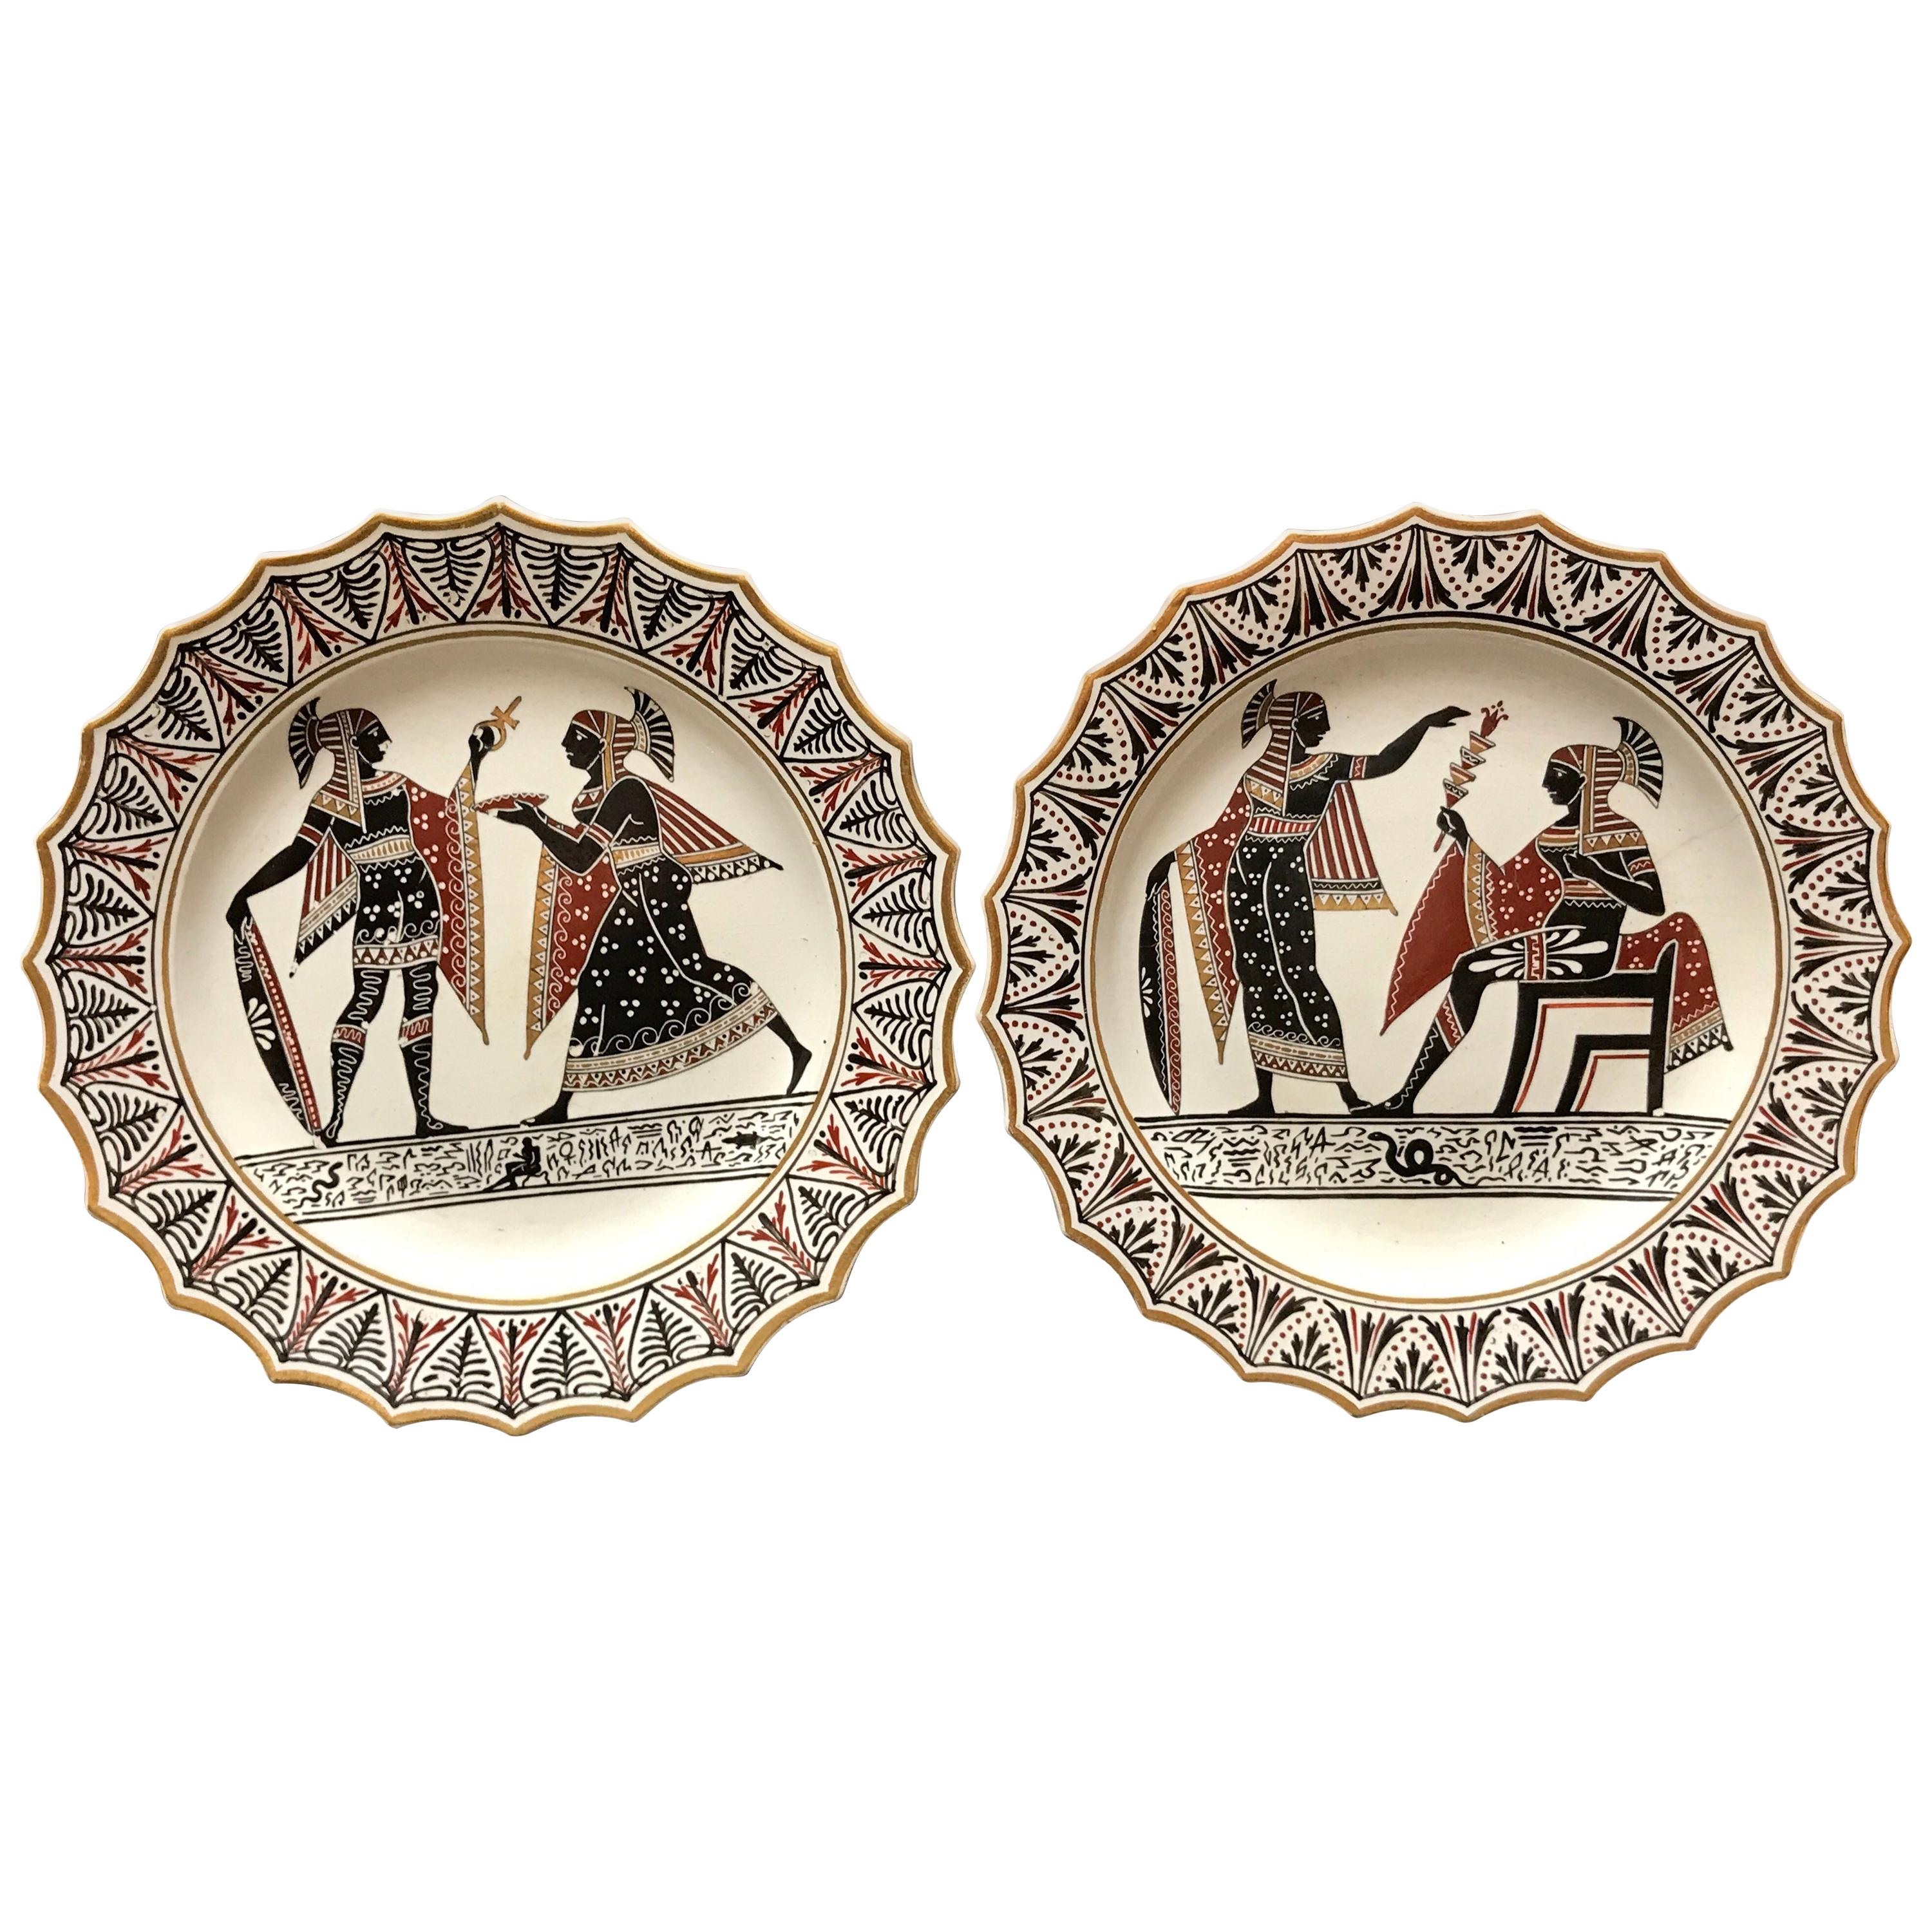 Paar Giustiniani Egyptomania Keramikteller mit vergoldeten Bordüren